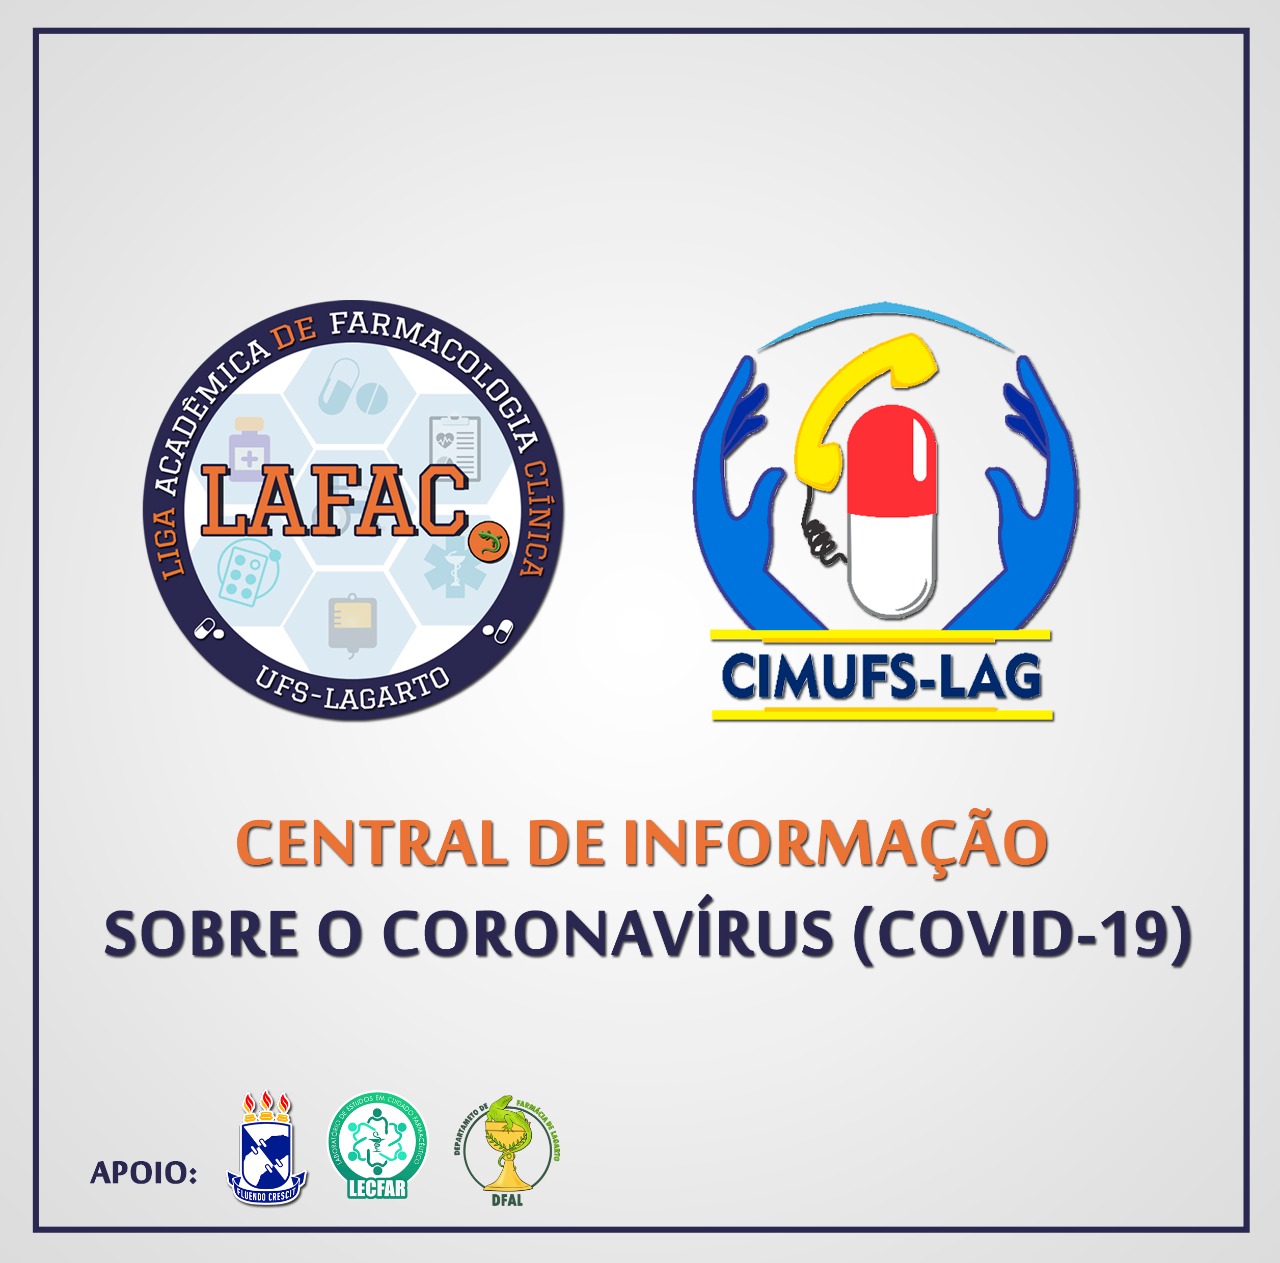 Central de Informações COVID-19